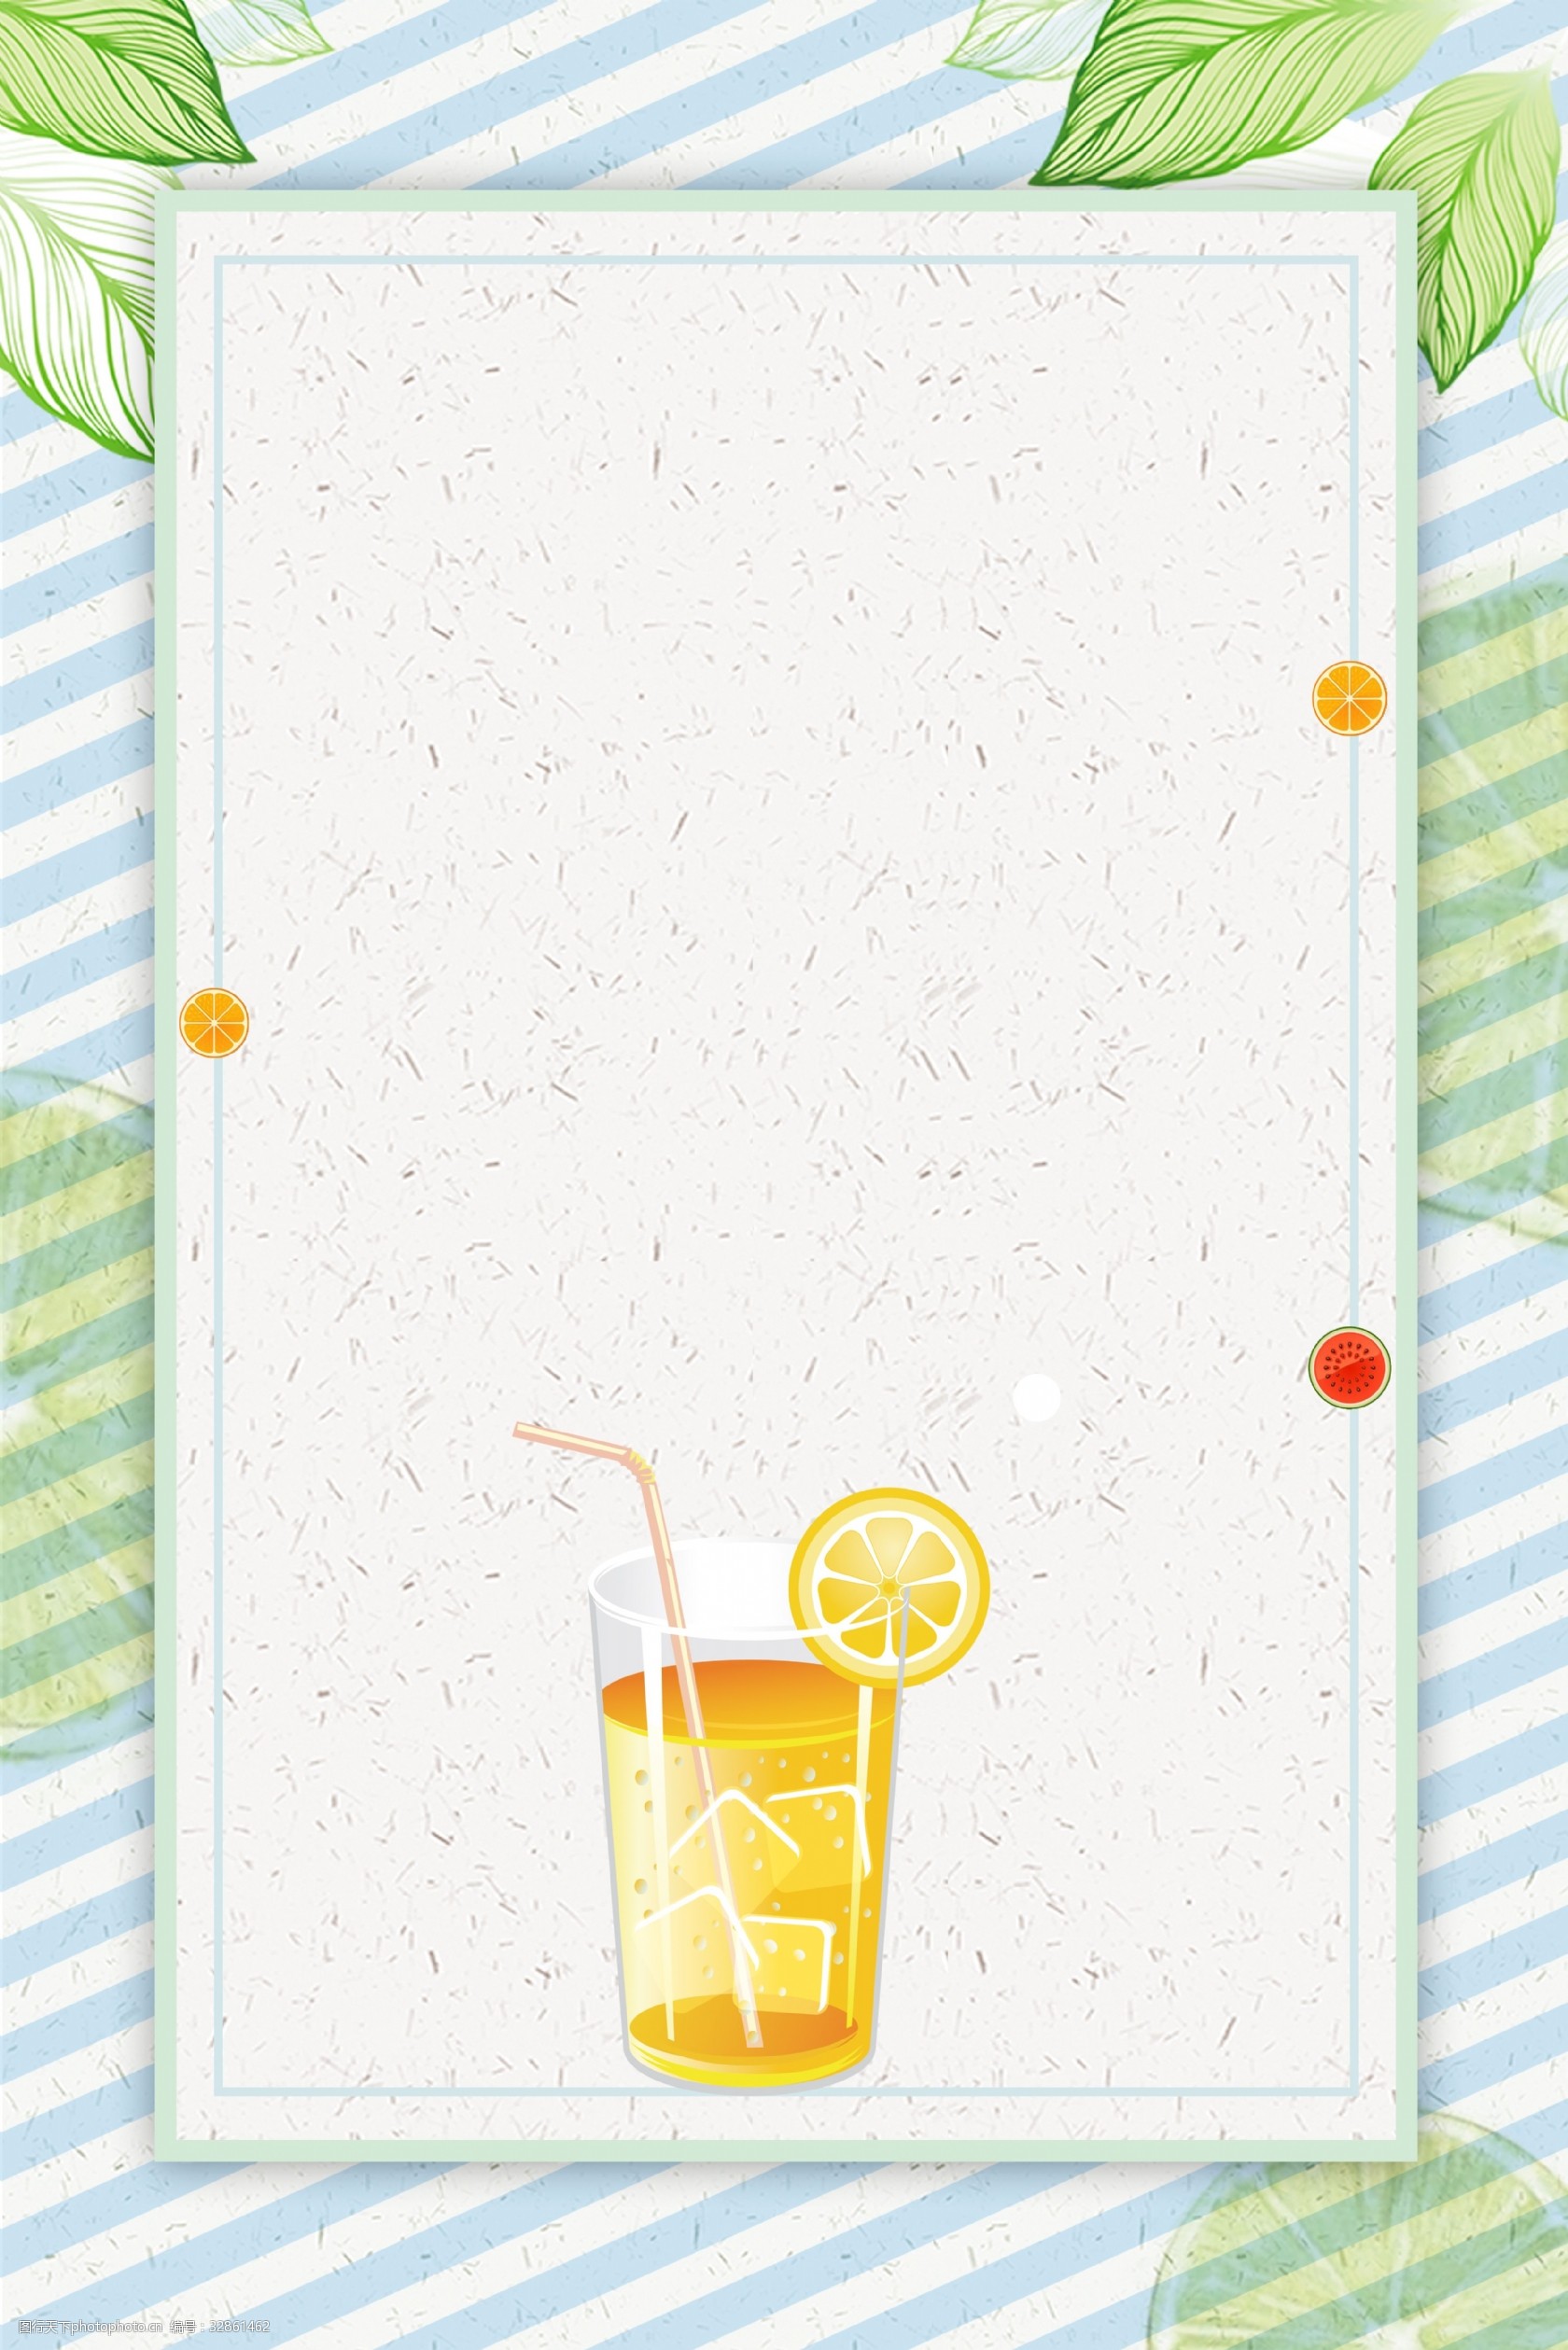 关键词:夏日新品果汁饮品背景 夏日 清凉一夏 果汁 饮料海报 促销 小